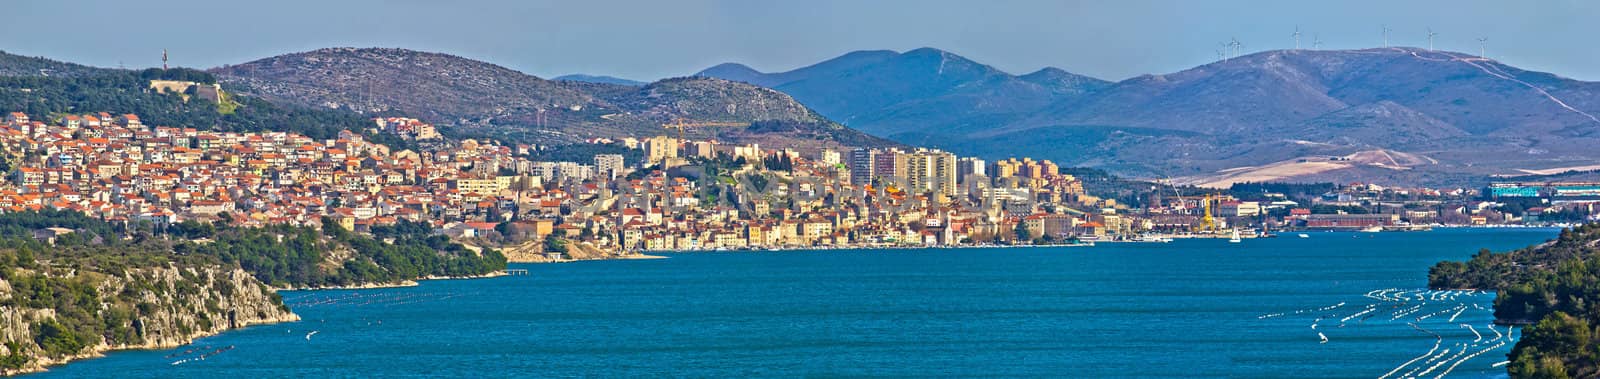 Town and bay of Sibenik panoramic view, Dalmatia, Croatia